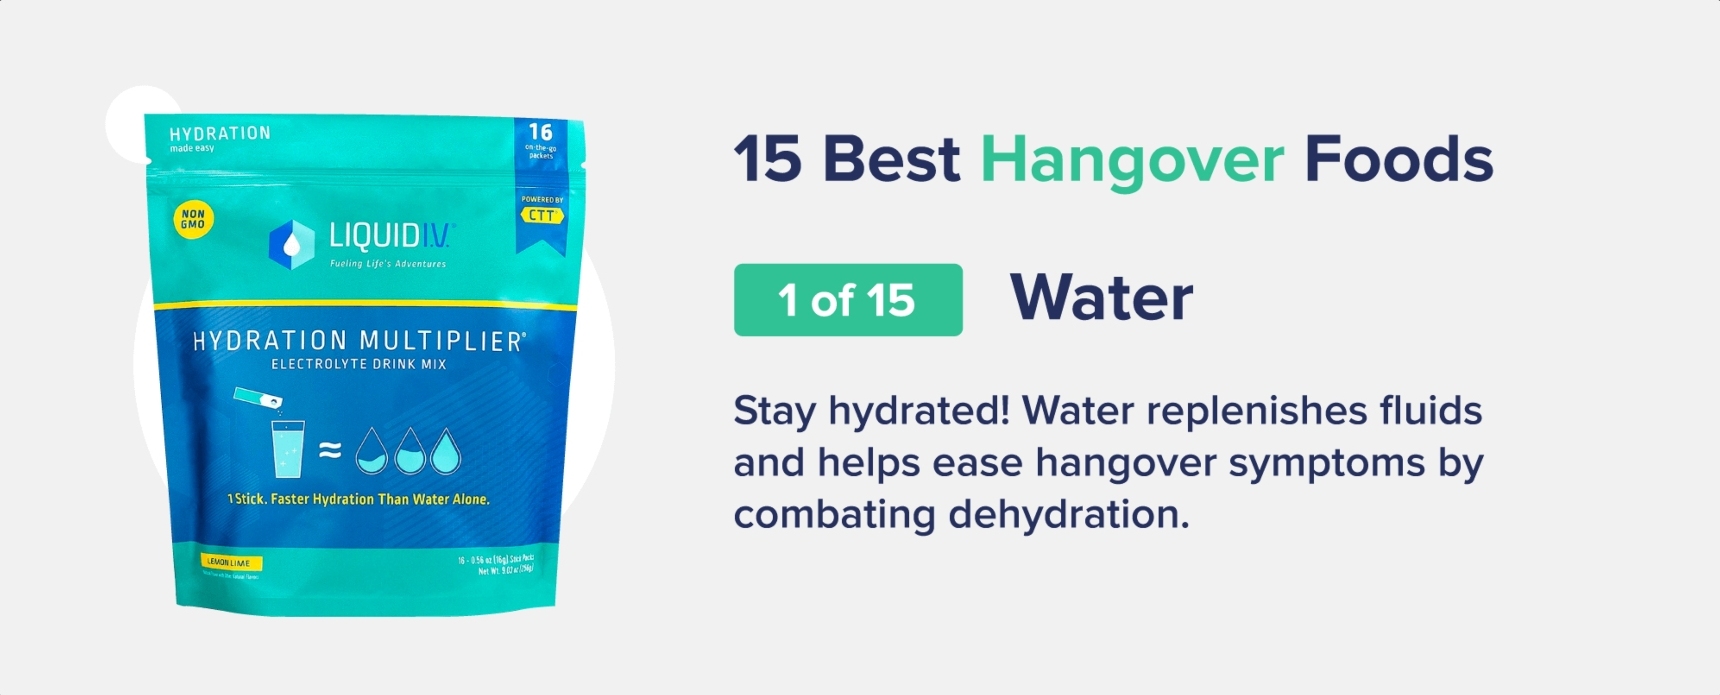 water best hangover foods